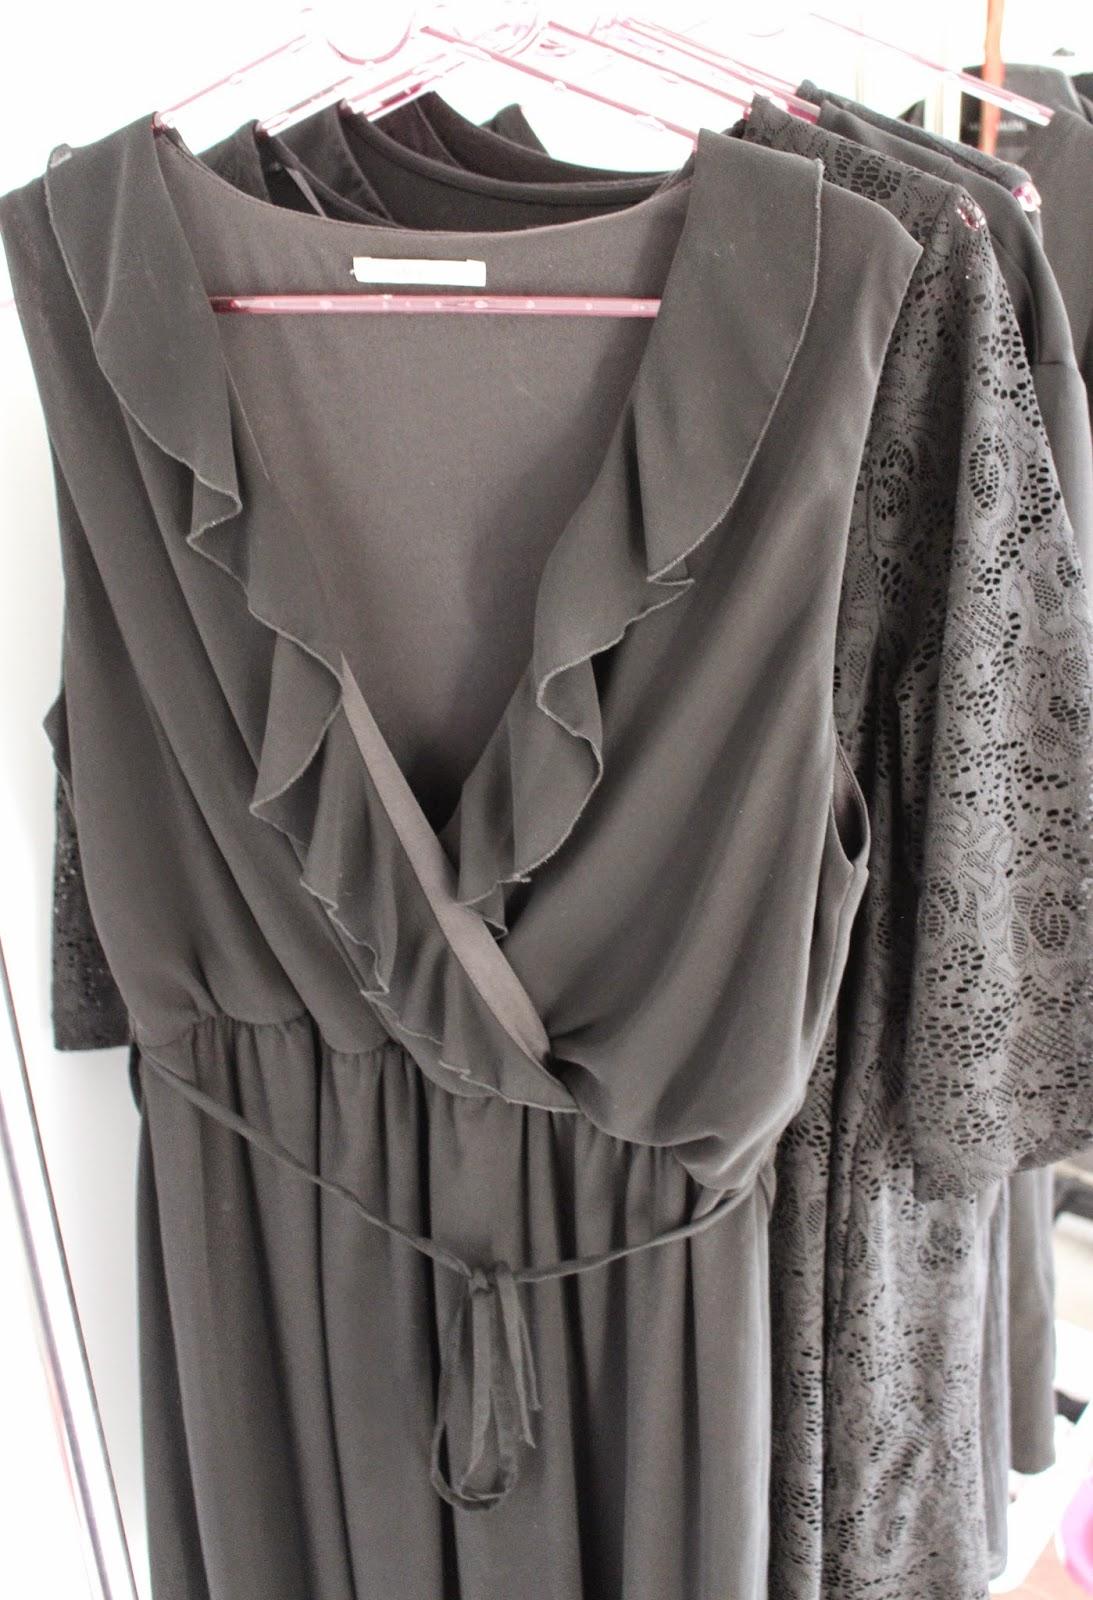 French Curves Challenge: la petite robe noire